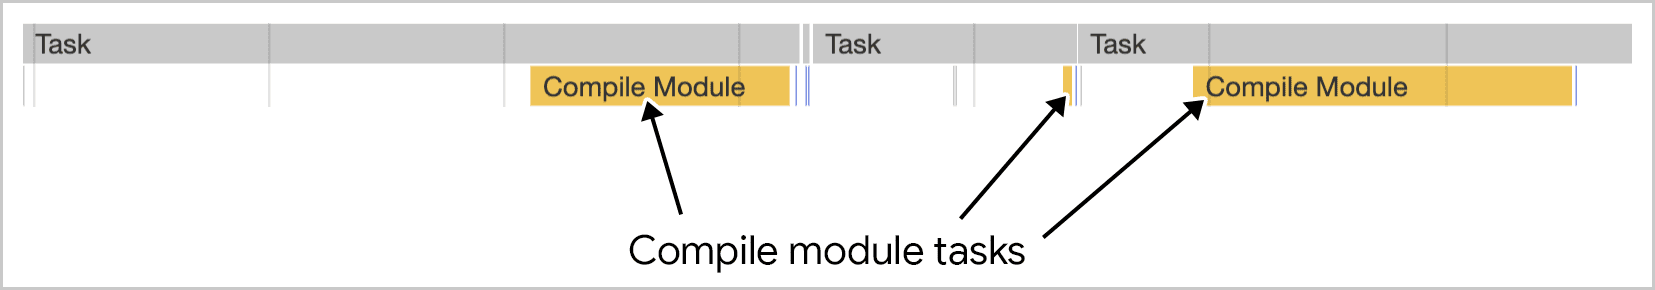 模块编译可在多个任务中完成，如 Chrome 开发者工具所示。